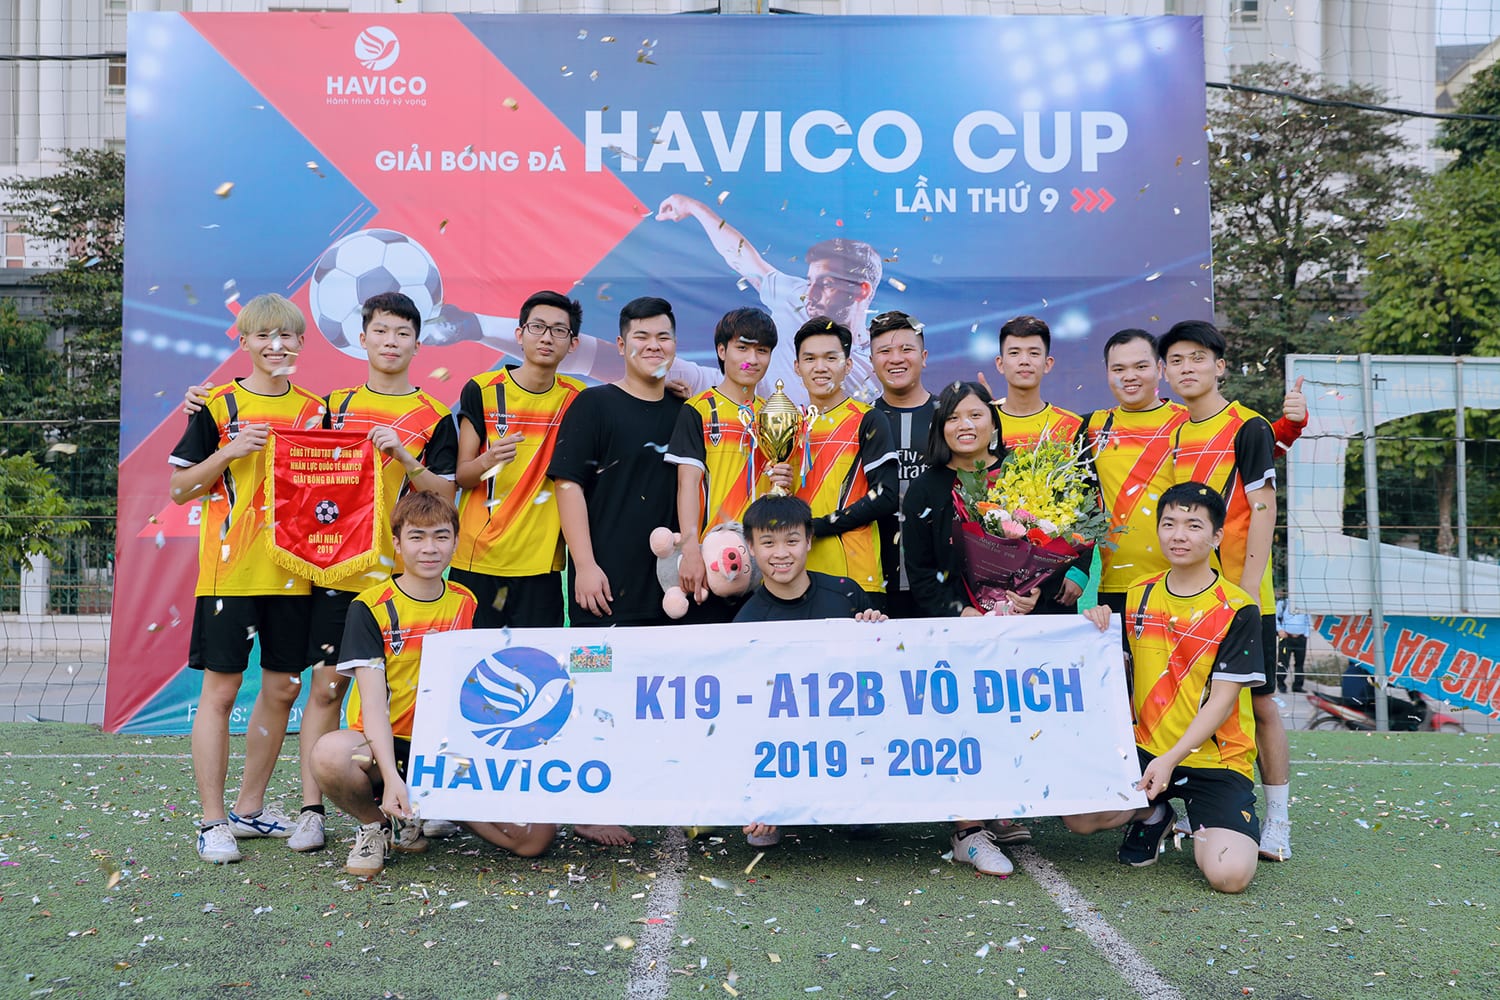 Bế mạc giải bóng đá HAVICO CUP lần thứ 9